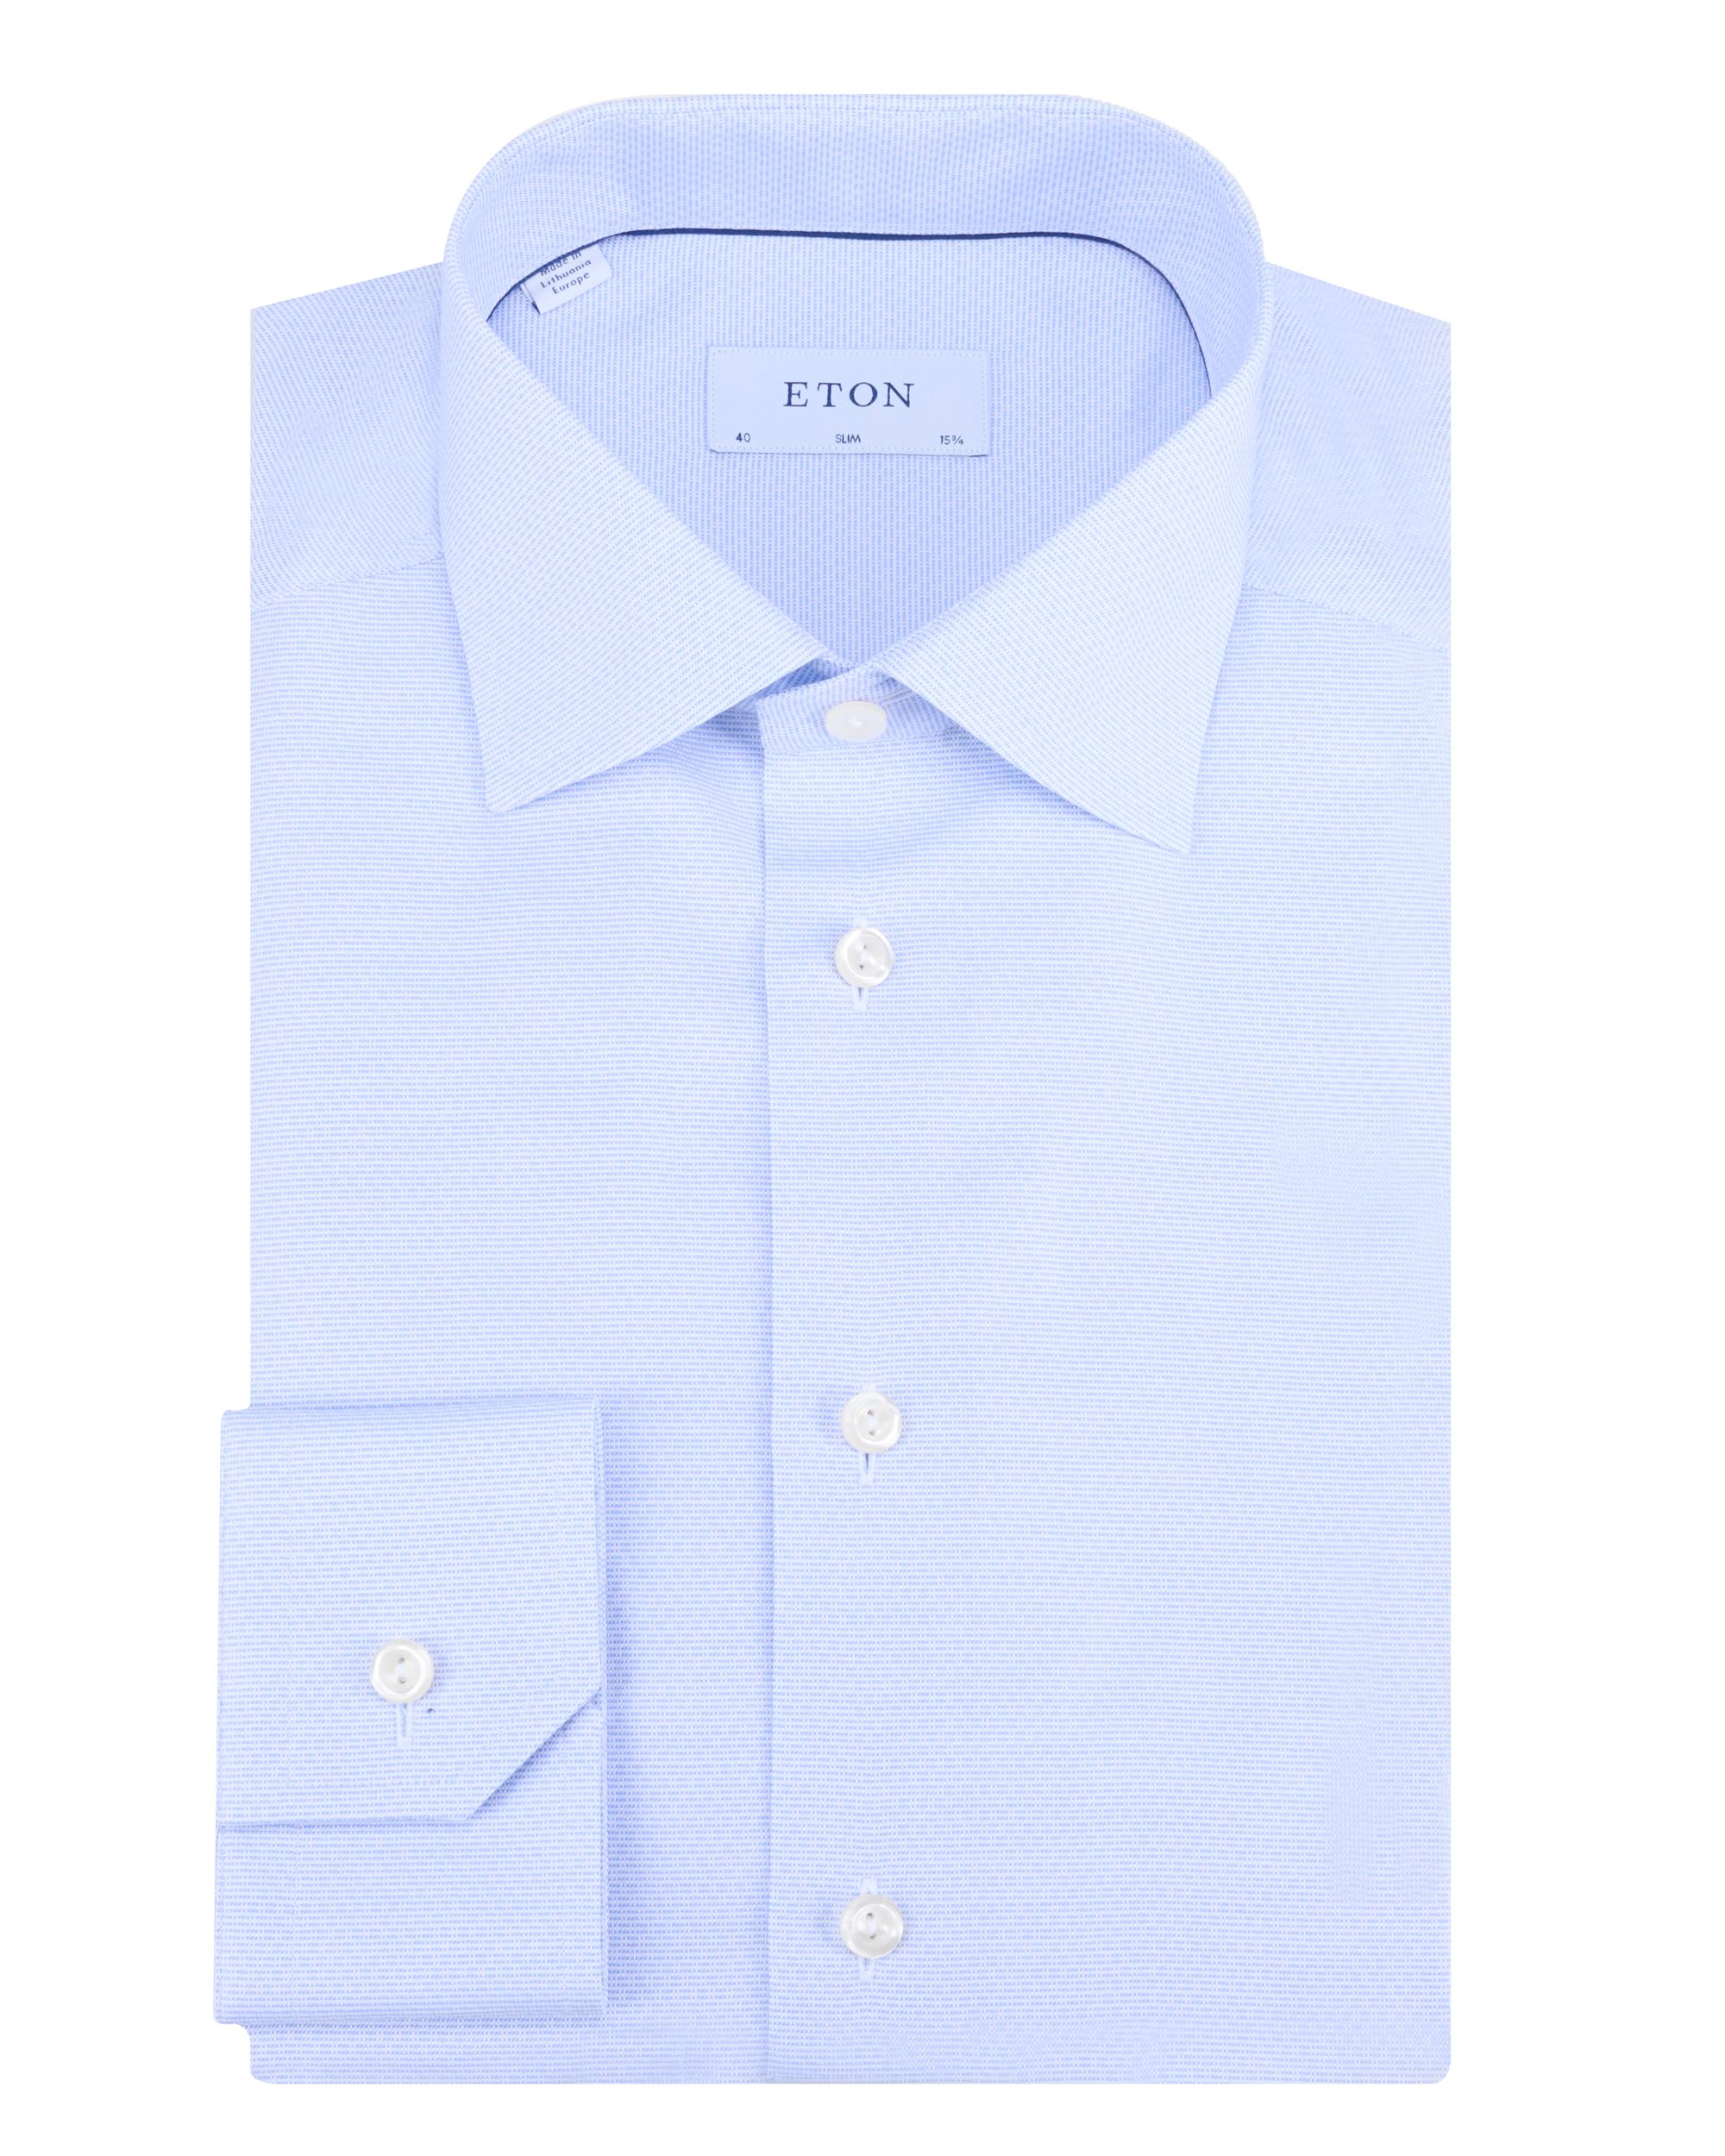 ETON Overhemd LM Blauw 091980-001-41